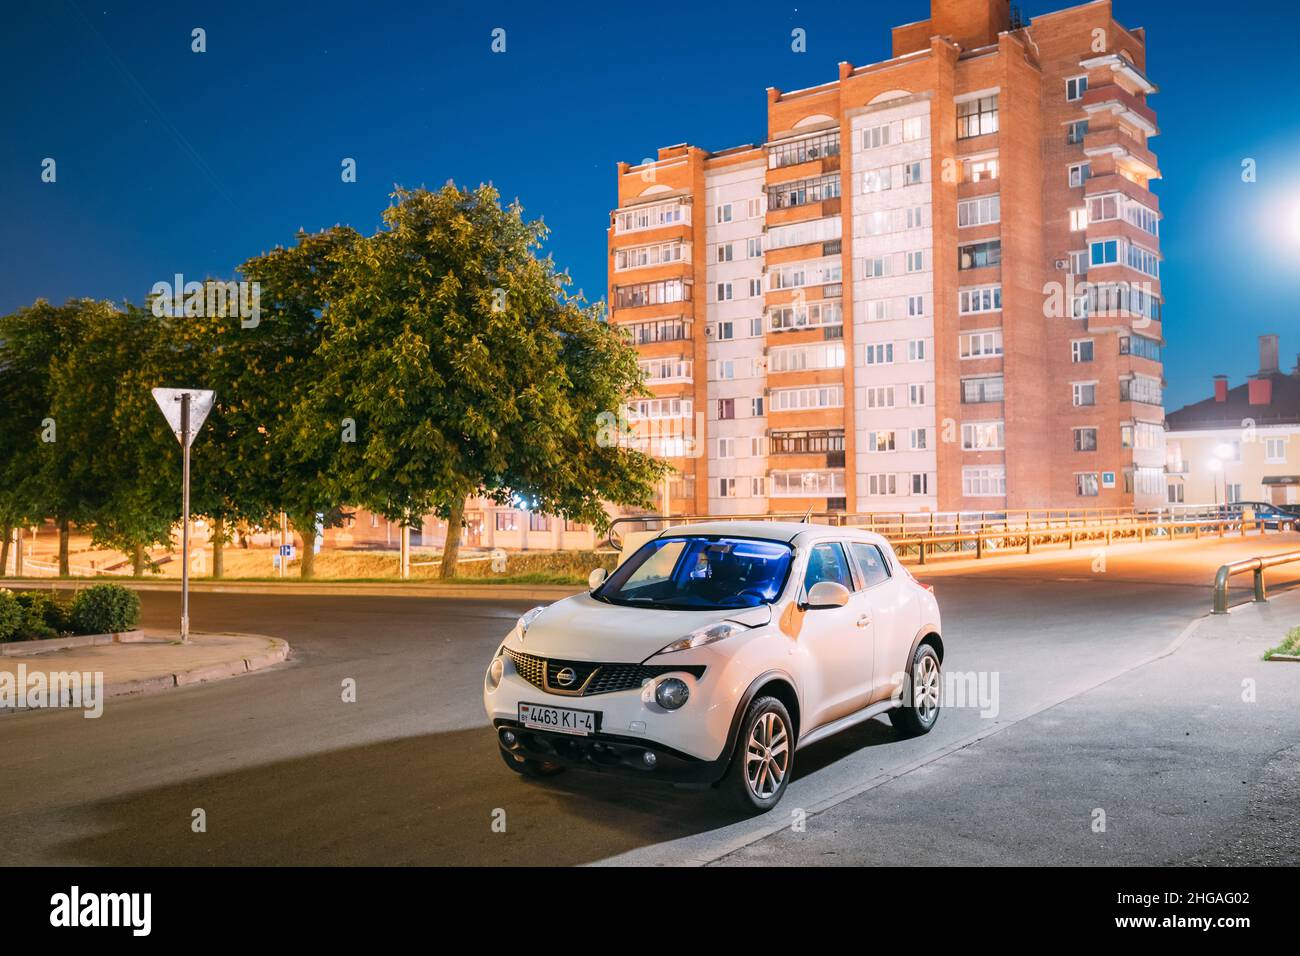 Grodno, Bélarus.Voiture de couleur blanche Nissan Juke garée dans la rue dans la zone résidentielle.Nissan Juke est un vus multisegment sous-compact fabriqué par des Japonais Banque D'Images